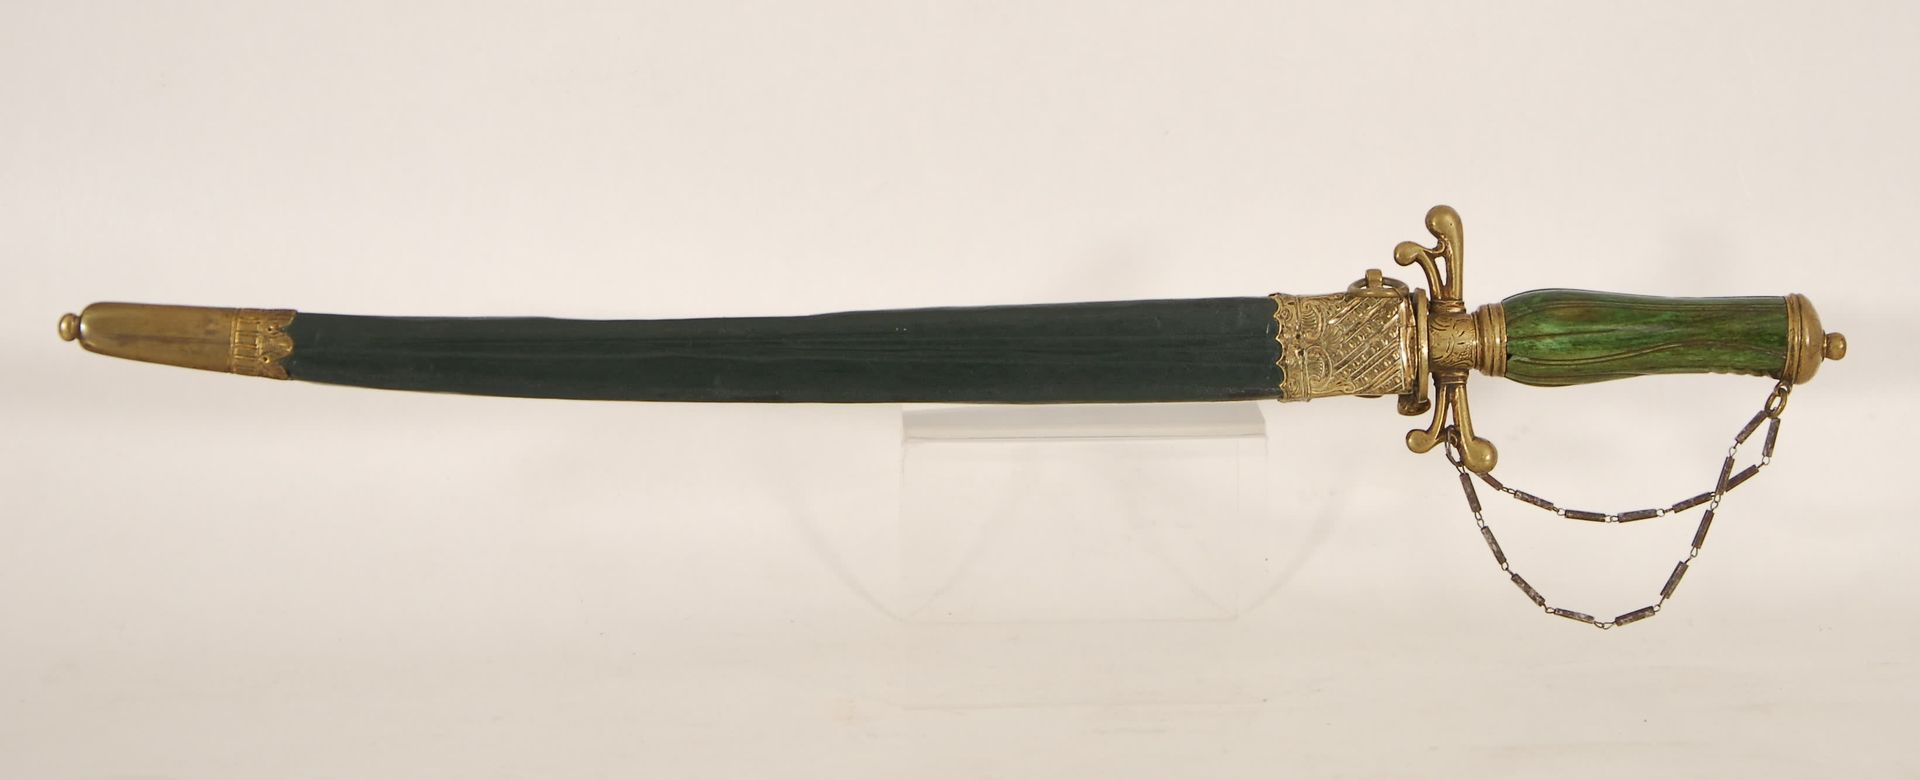 Null 狩猎匕首
雕刻的单刃刀。绿色着色的象牙色手柄。

铜和皮革护套。19世纪。
长55厘米。
所有潜在的买家应阅读有关濒危物种的销售条件（第19条）。